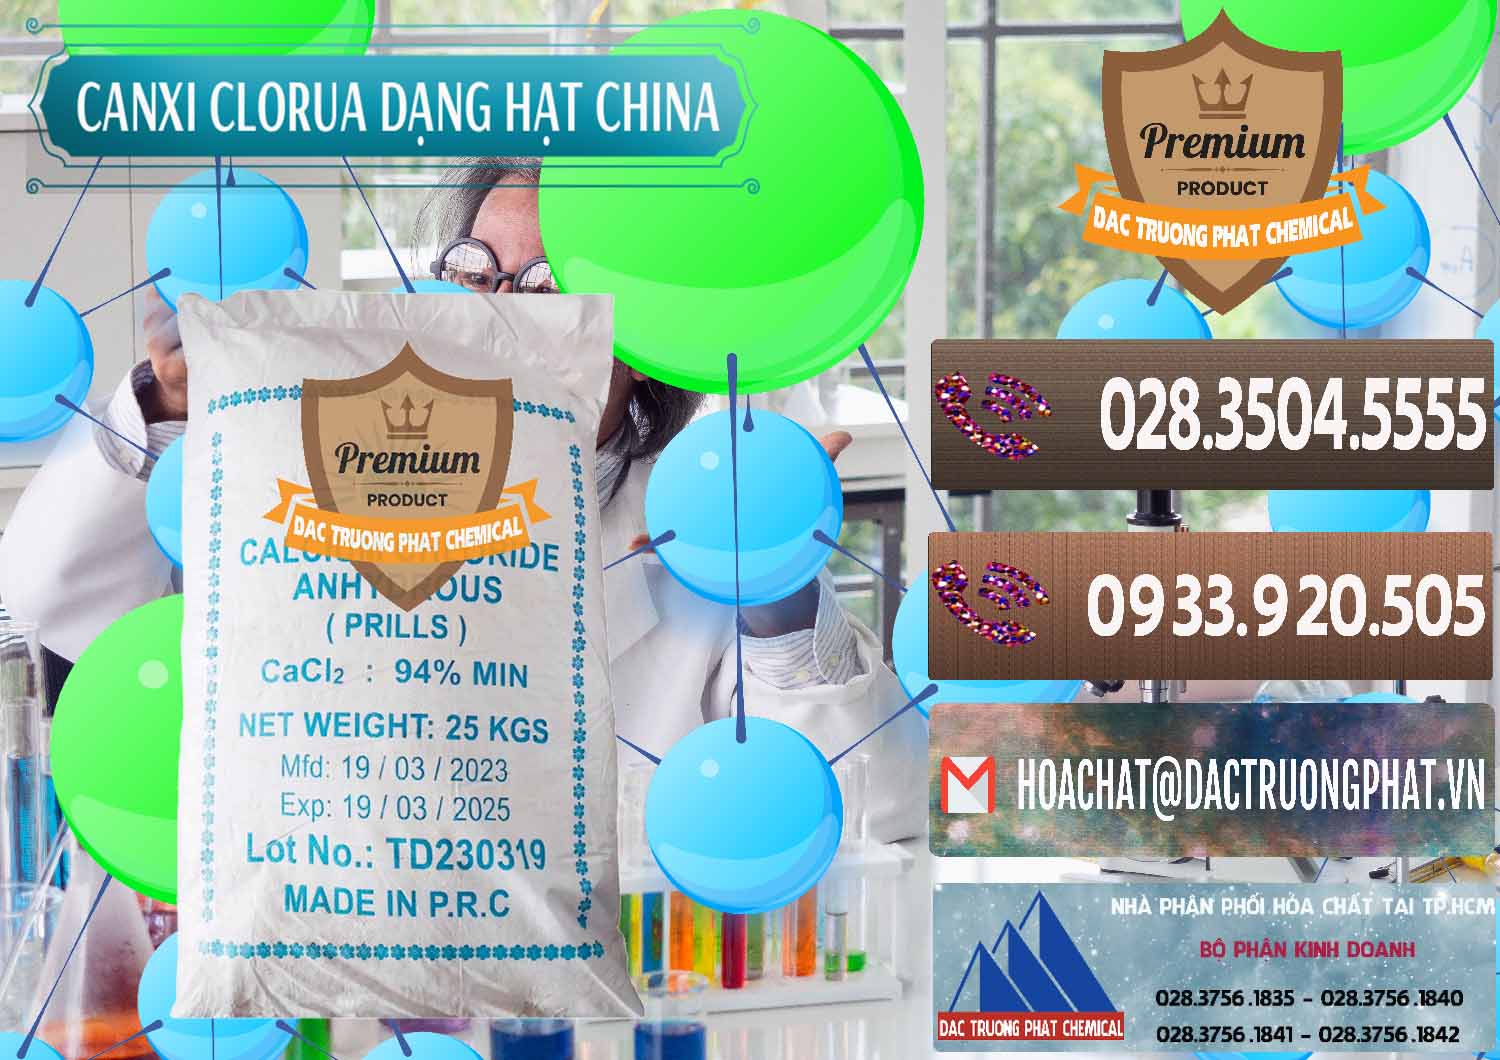 Công ty chuyên kinh doanh _ bán CaCl2 – Canxi Clorua 94% Dạng Hạt Trung Quốc China - 0373 - Chuyên bán ( cung cấp ) hóa chất tại TP.HCM - hoachatviet.net